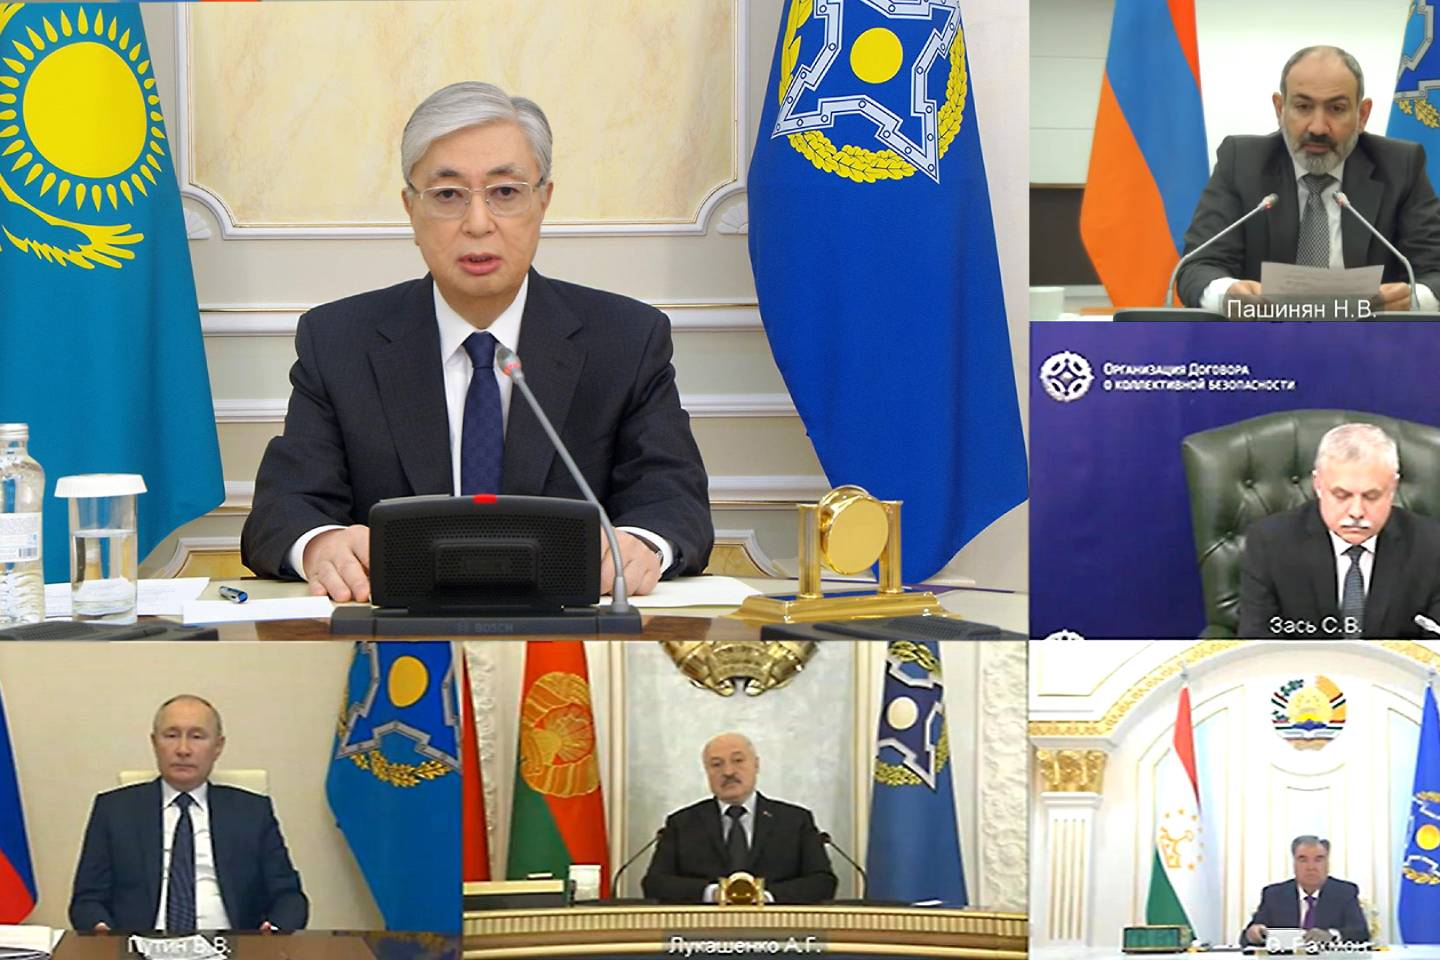 Новости мира / Политика в мире / Президент Казахстана выступил на сессии Совета коллективной безопасности ОДКБ